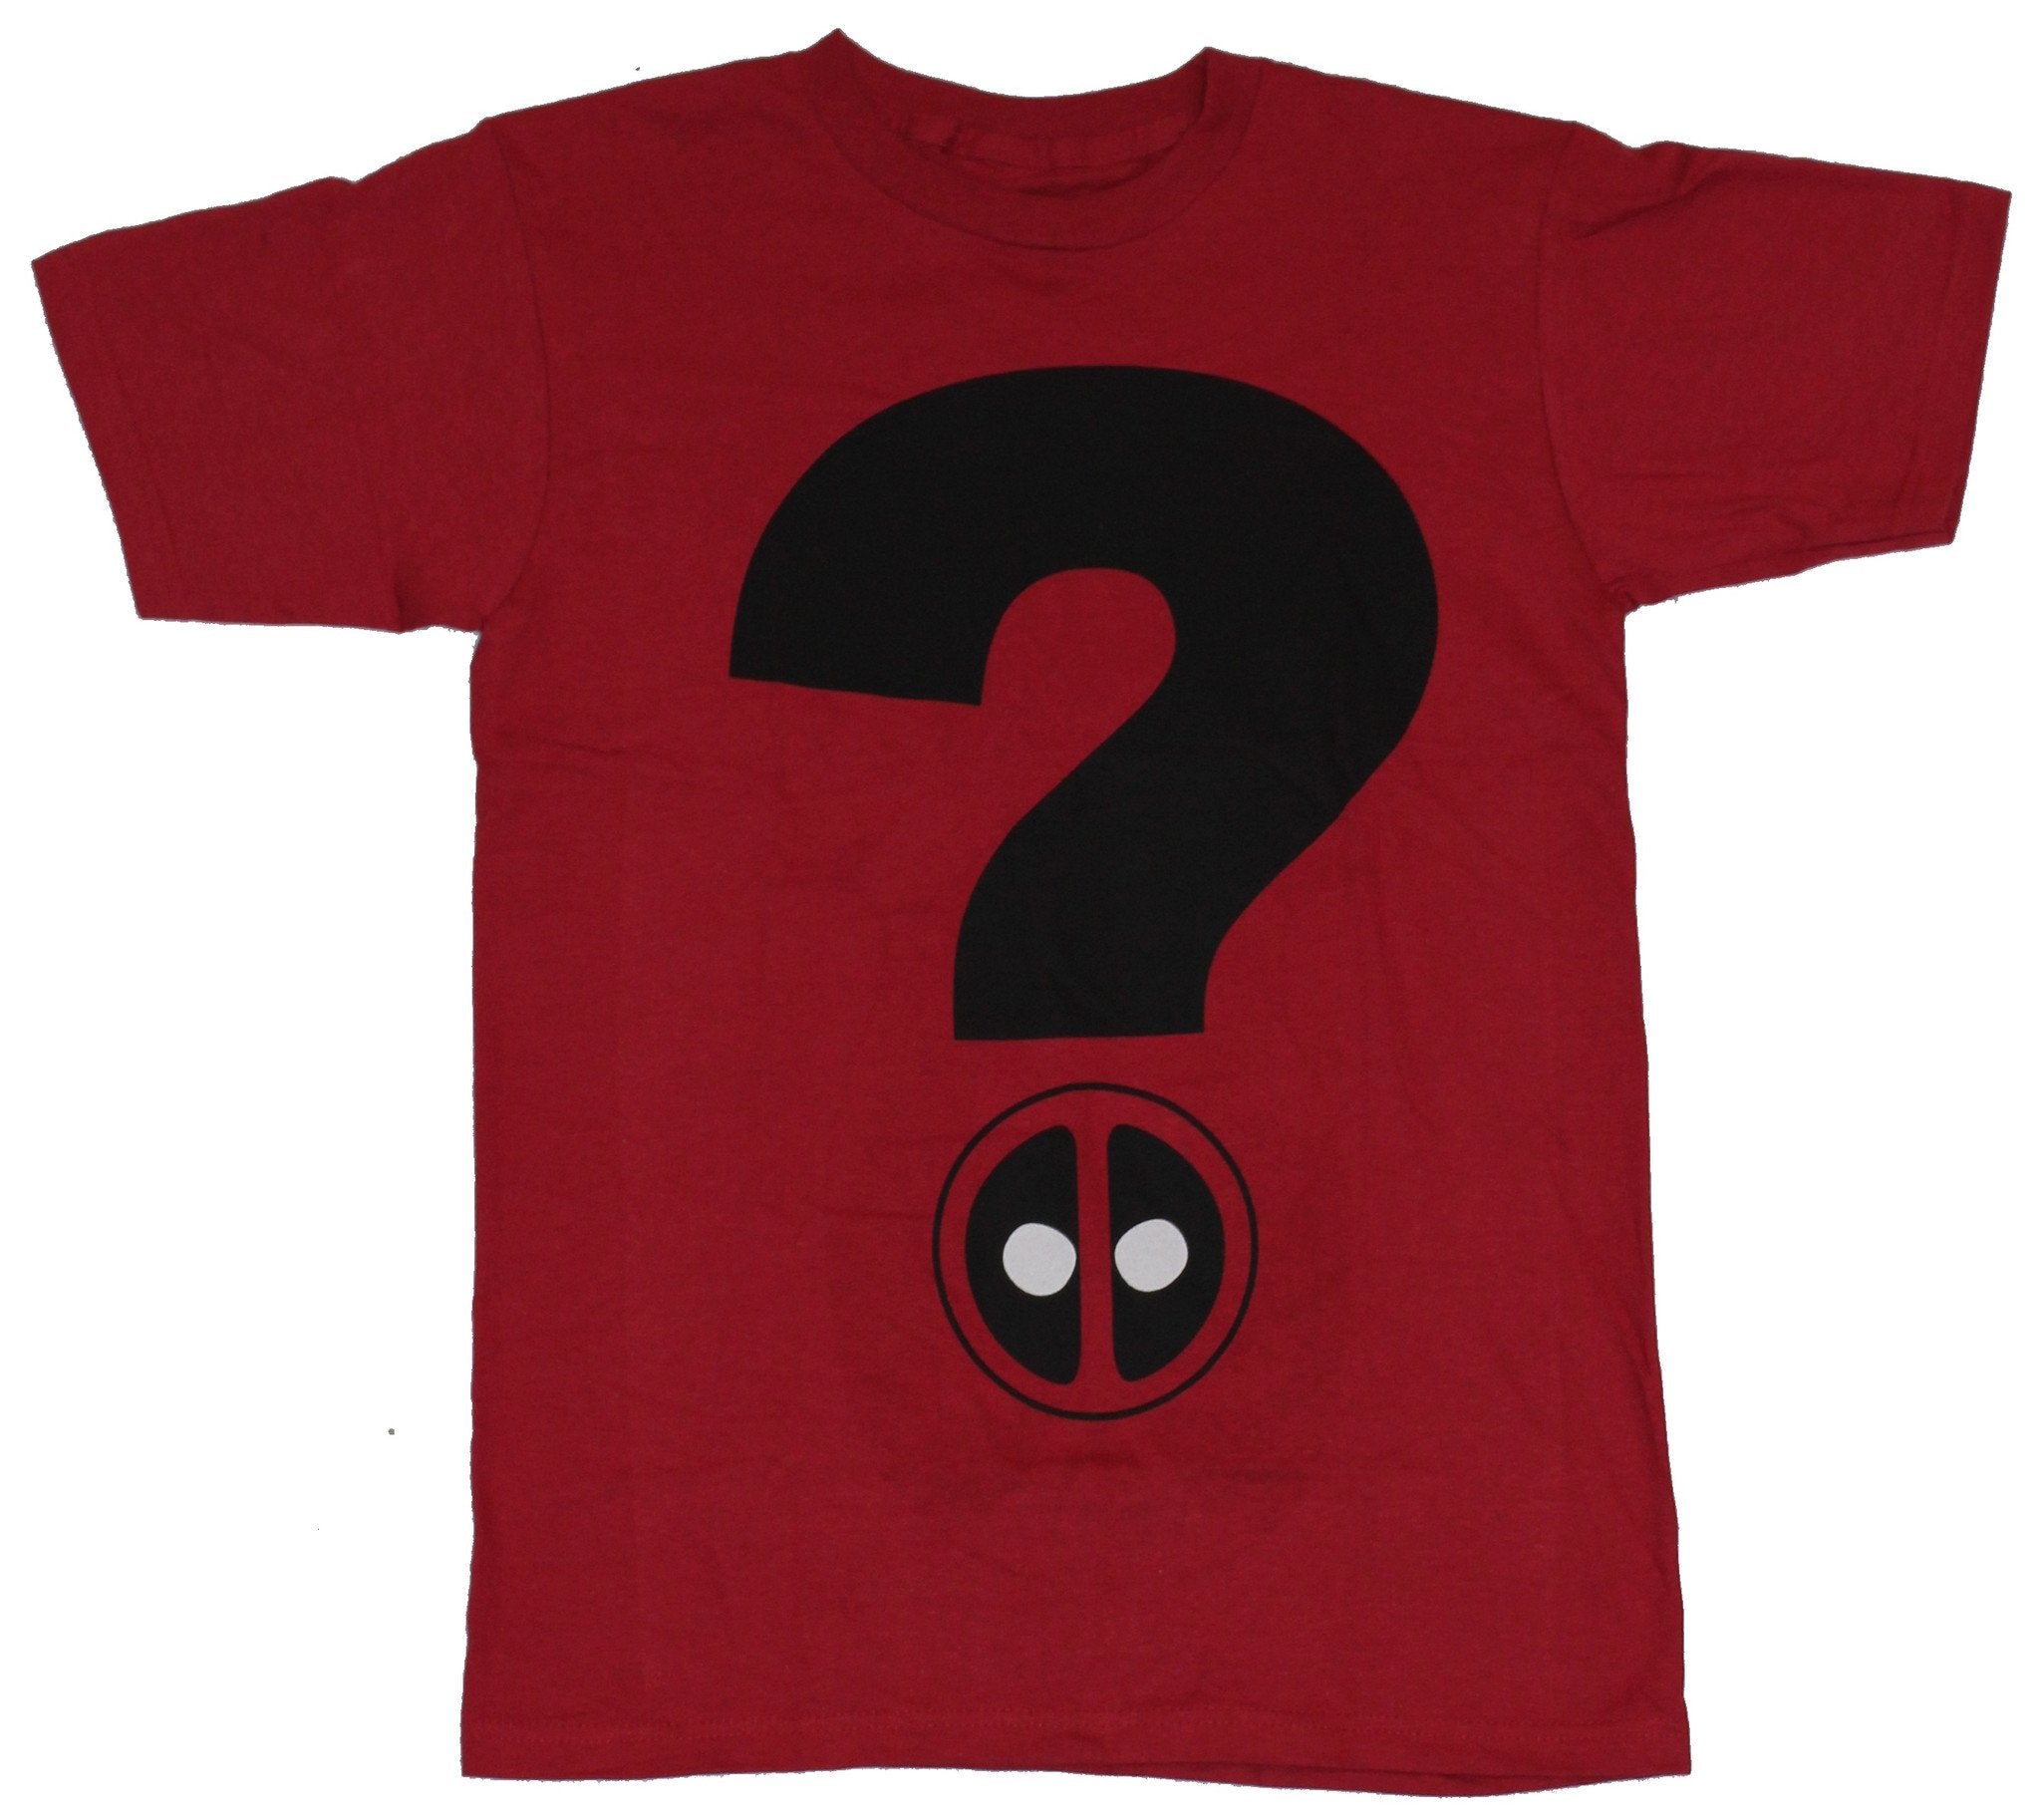 Deadpool (Marvel Comics) Mens T-Shirt - Deadpool Question Mark Logo Image